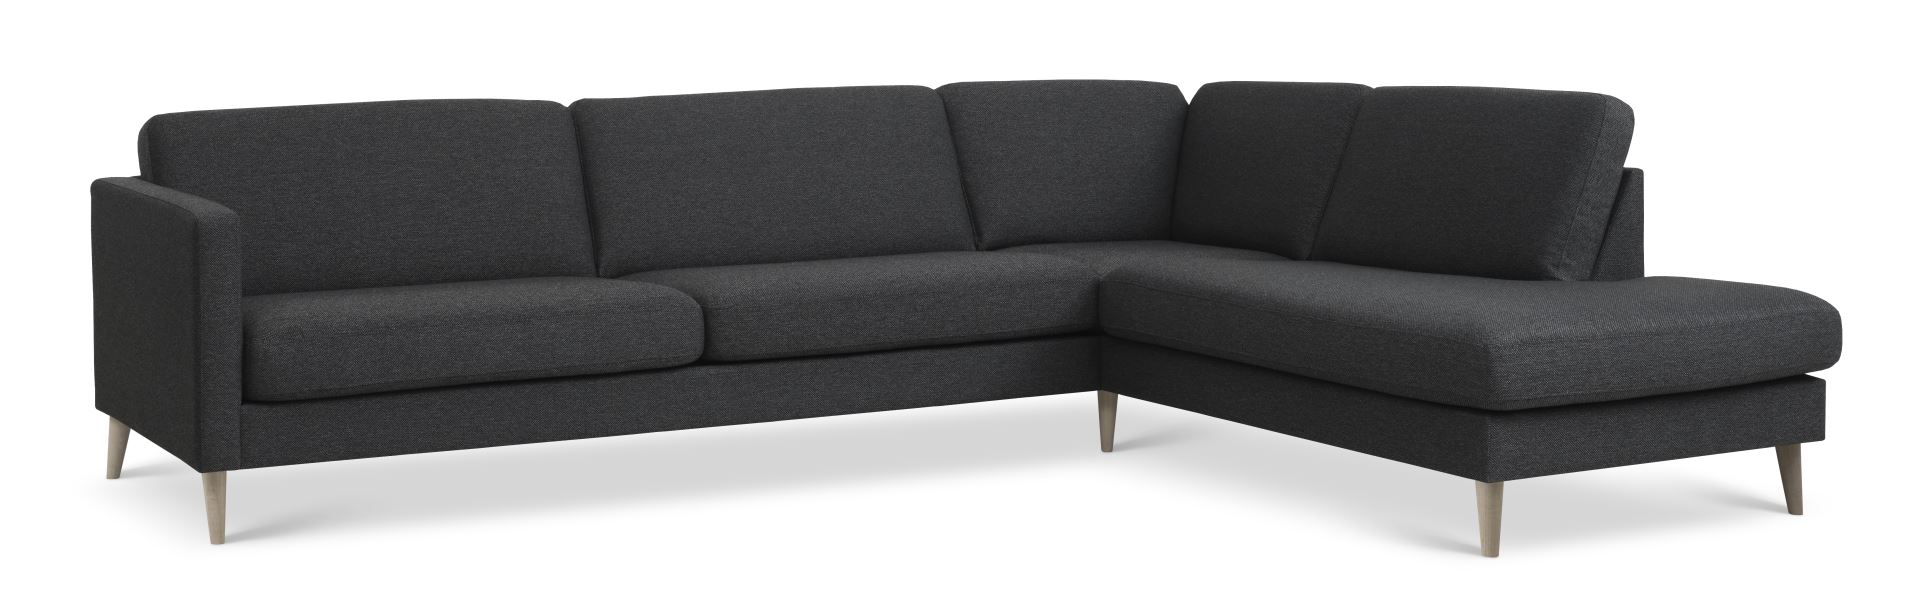 Ask sæt 61 stor OE sofa, m. højre chaiselong - antracitgrå polyester stof og natur træ